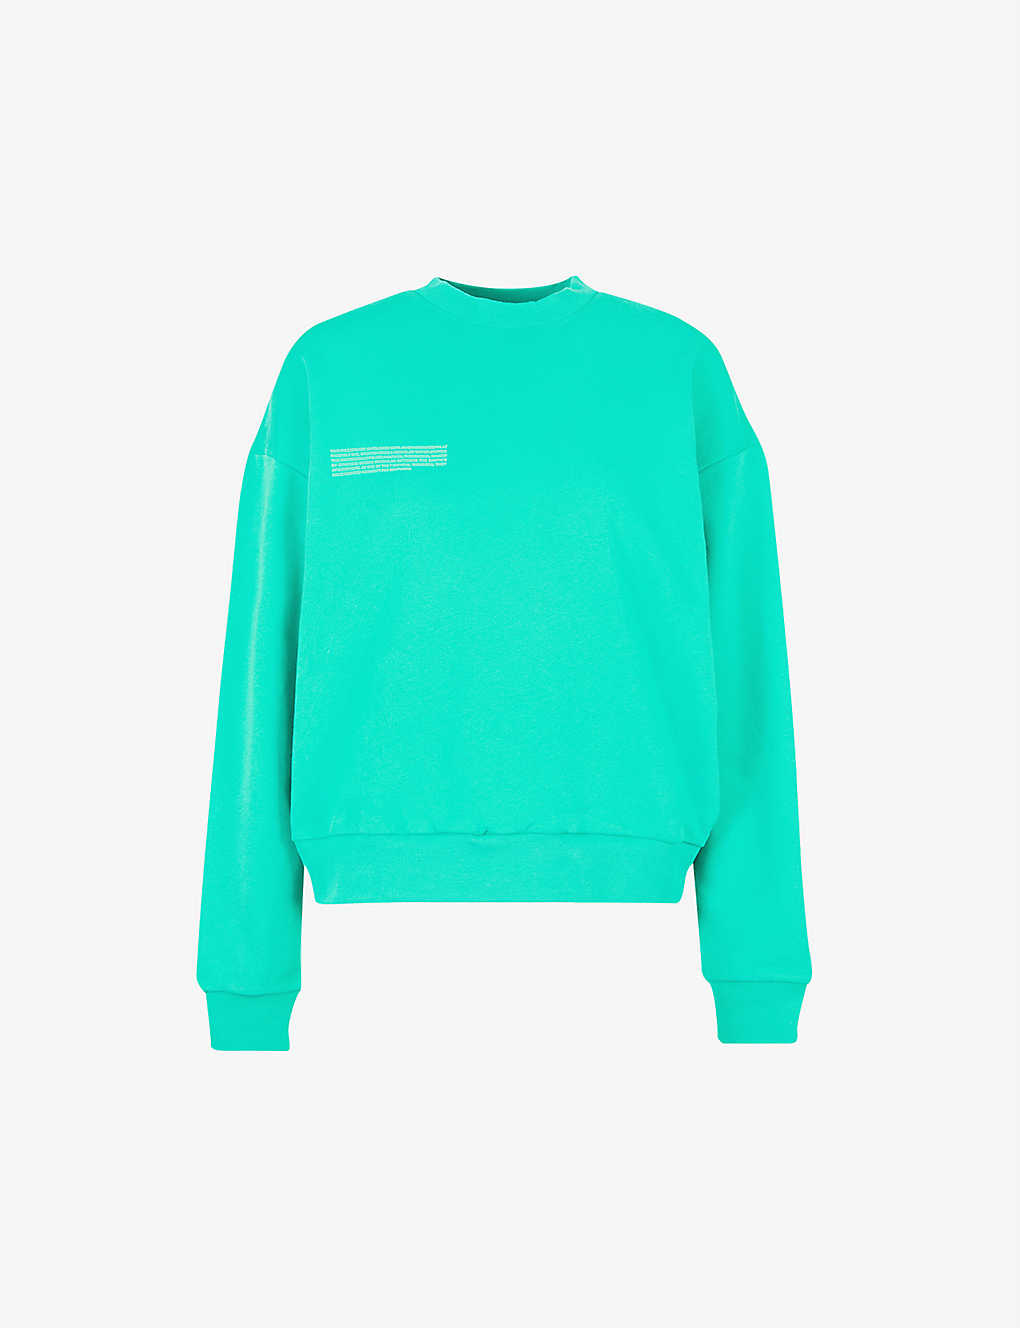 Aurora Green Sweatshirt.